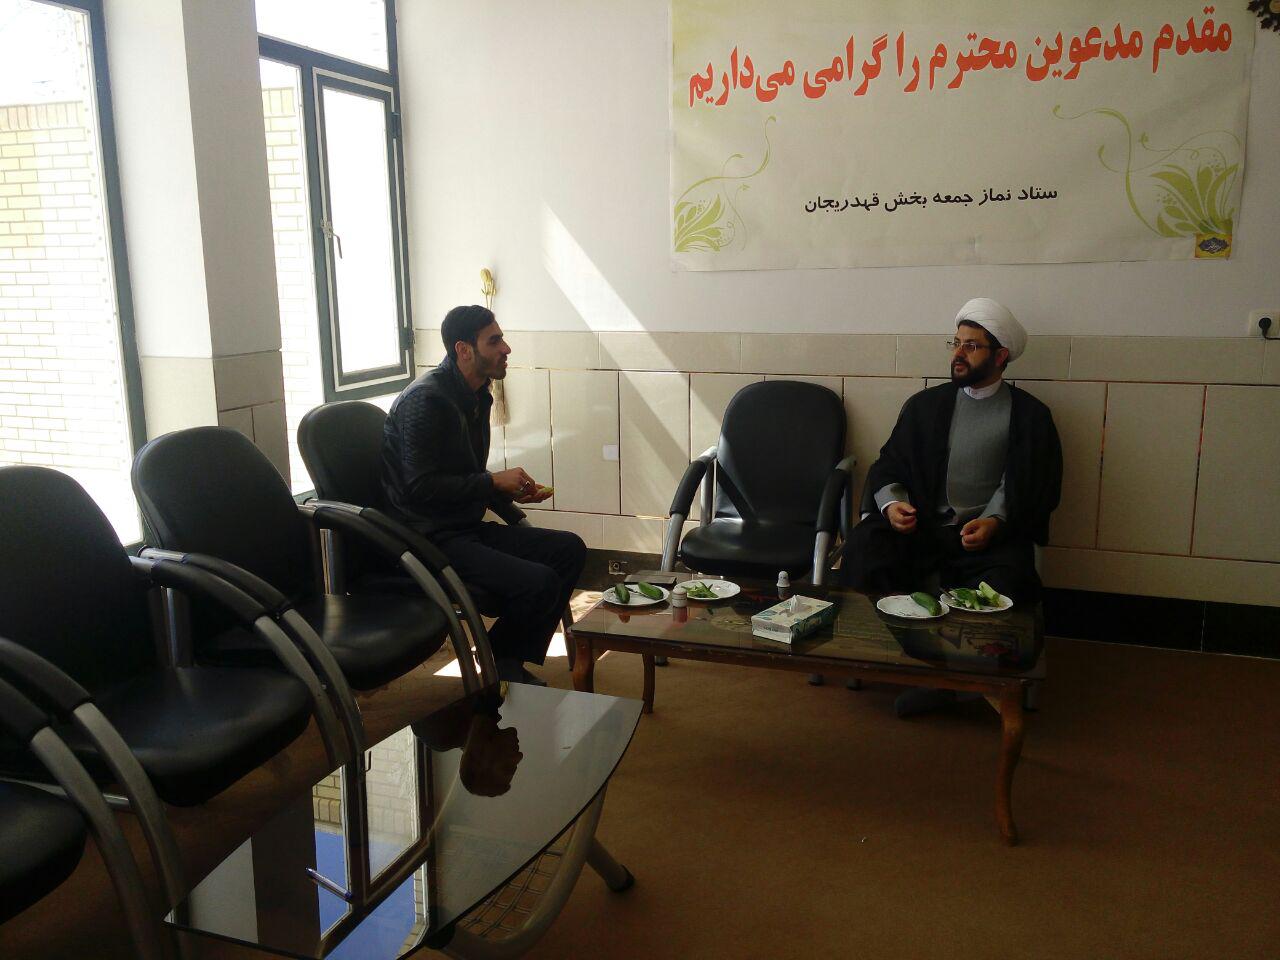 دیدار مسئول گروه فرهنگی صابرین با امام جمعه محترم شهر قهدریجان در دفتر